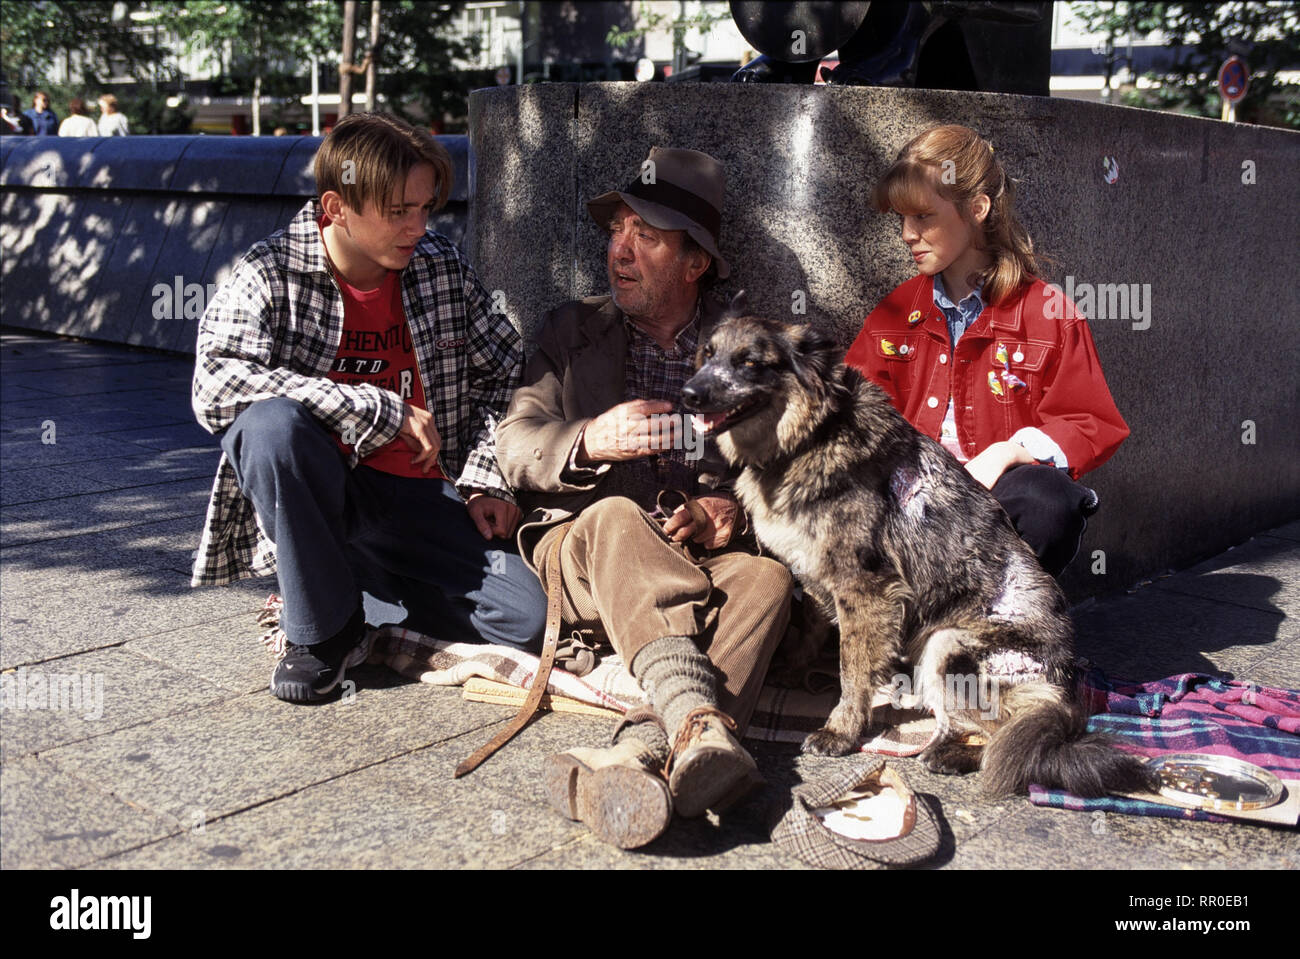 UNSER CHARLY / Ein Schwein namens Lore / D 1998 / Franz Josef Gottlieb / In der Fußgängerzone werden Sandra (SUSANNE SCHERBEL) und Johnny (SIGGI KAUTZ) auf den Obdachlosen Theo (HANS CLARIN) aufmerksam, der mit seinem Hund Oskar bettelt. Weil der Hund so vernachlässigt wirkt, bietet Sandra dem Penner kostenlose tierärztliche Betreuung an. - Folge: Ein Schwein namens Lore / Überschrift: UNSER CHARLY / D 1998 Stock Photo